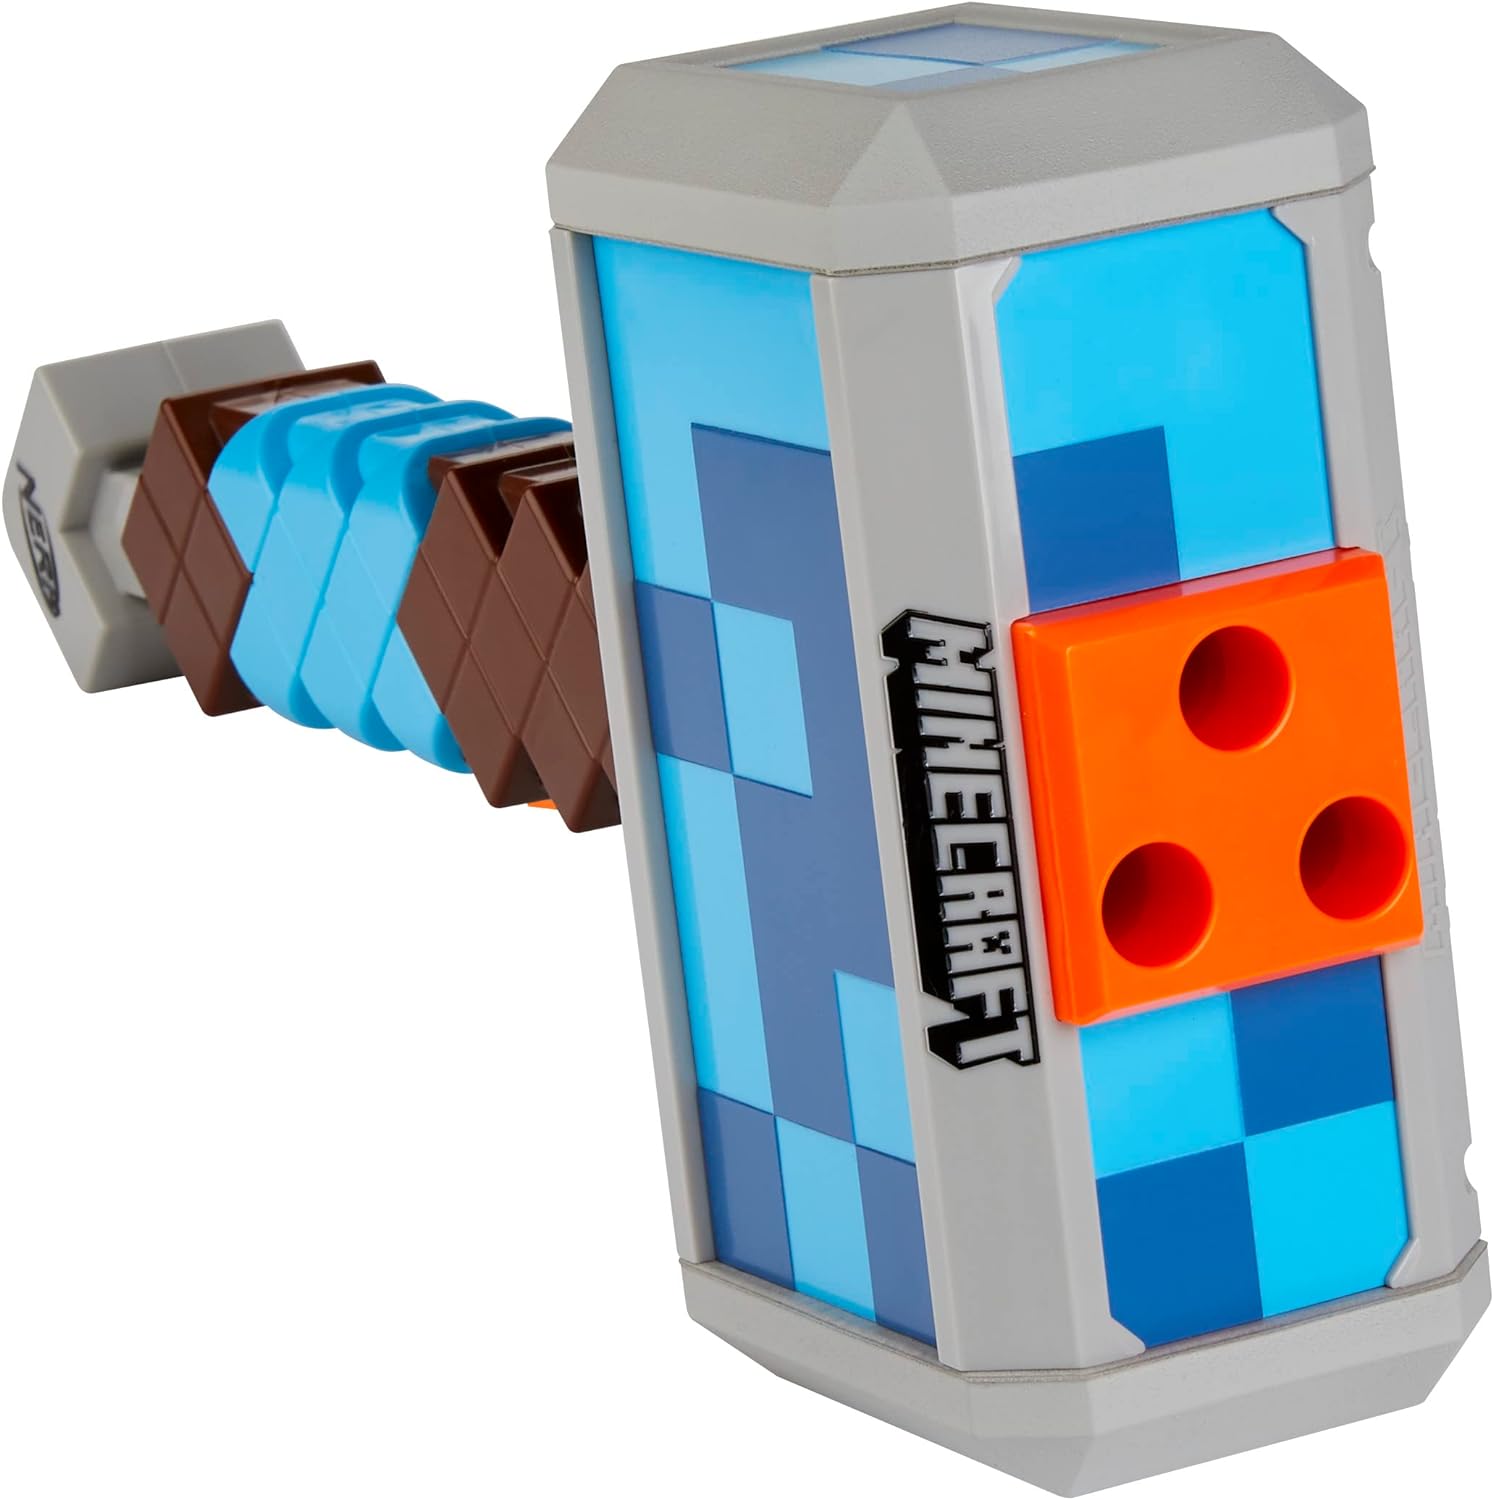 Nerf Minecraft Stormlander Dart Blasting Hammer, Fires 3 Darts, Includes 3 Official Nerf Elite Darts, Pull Back Priming Handle